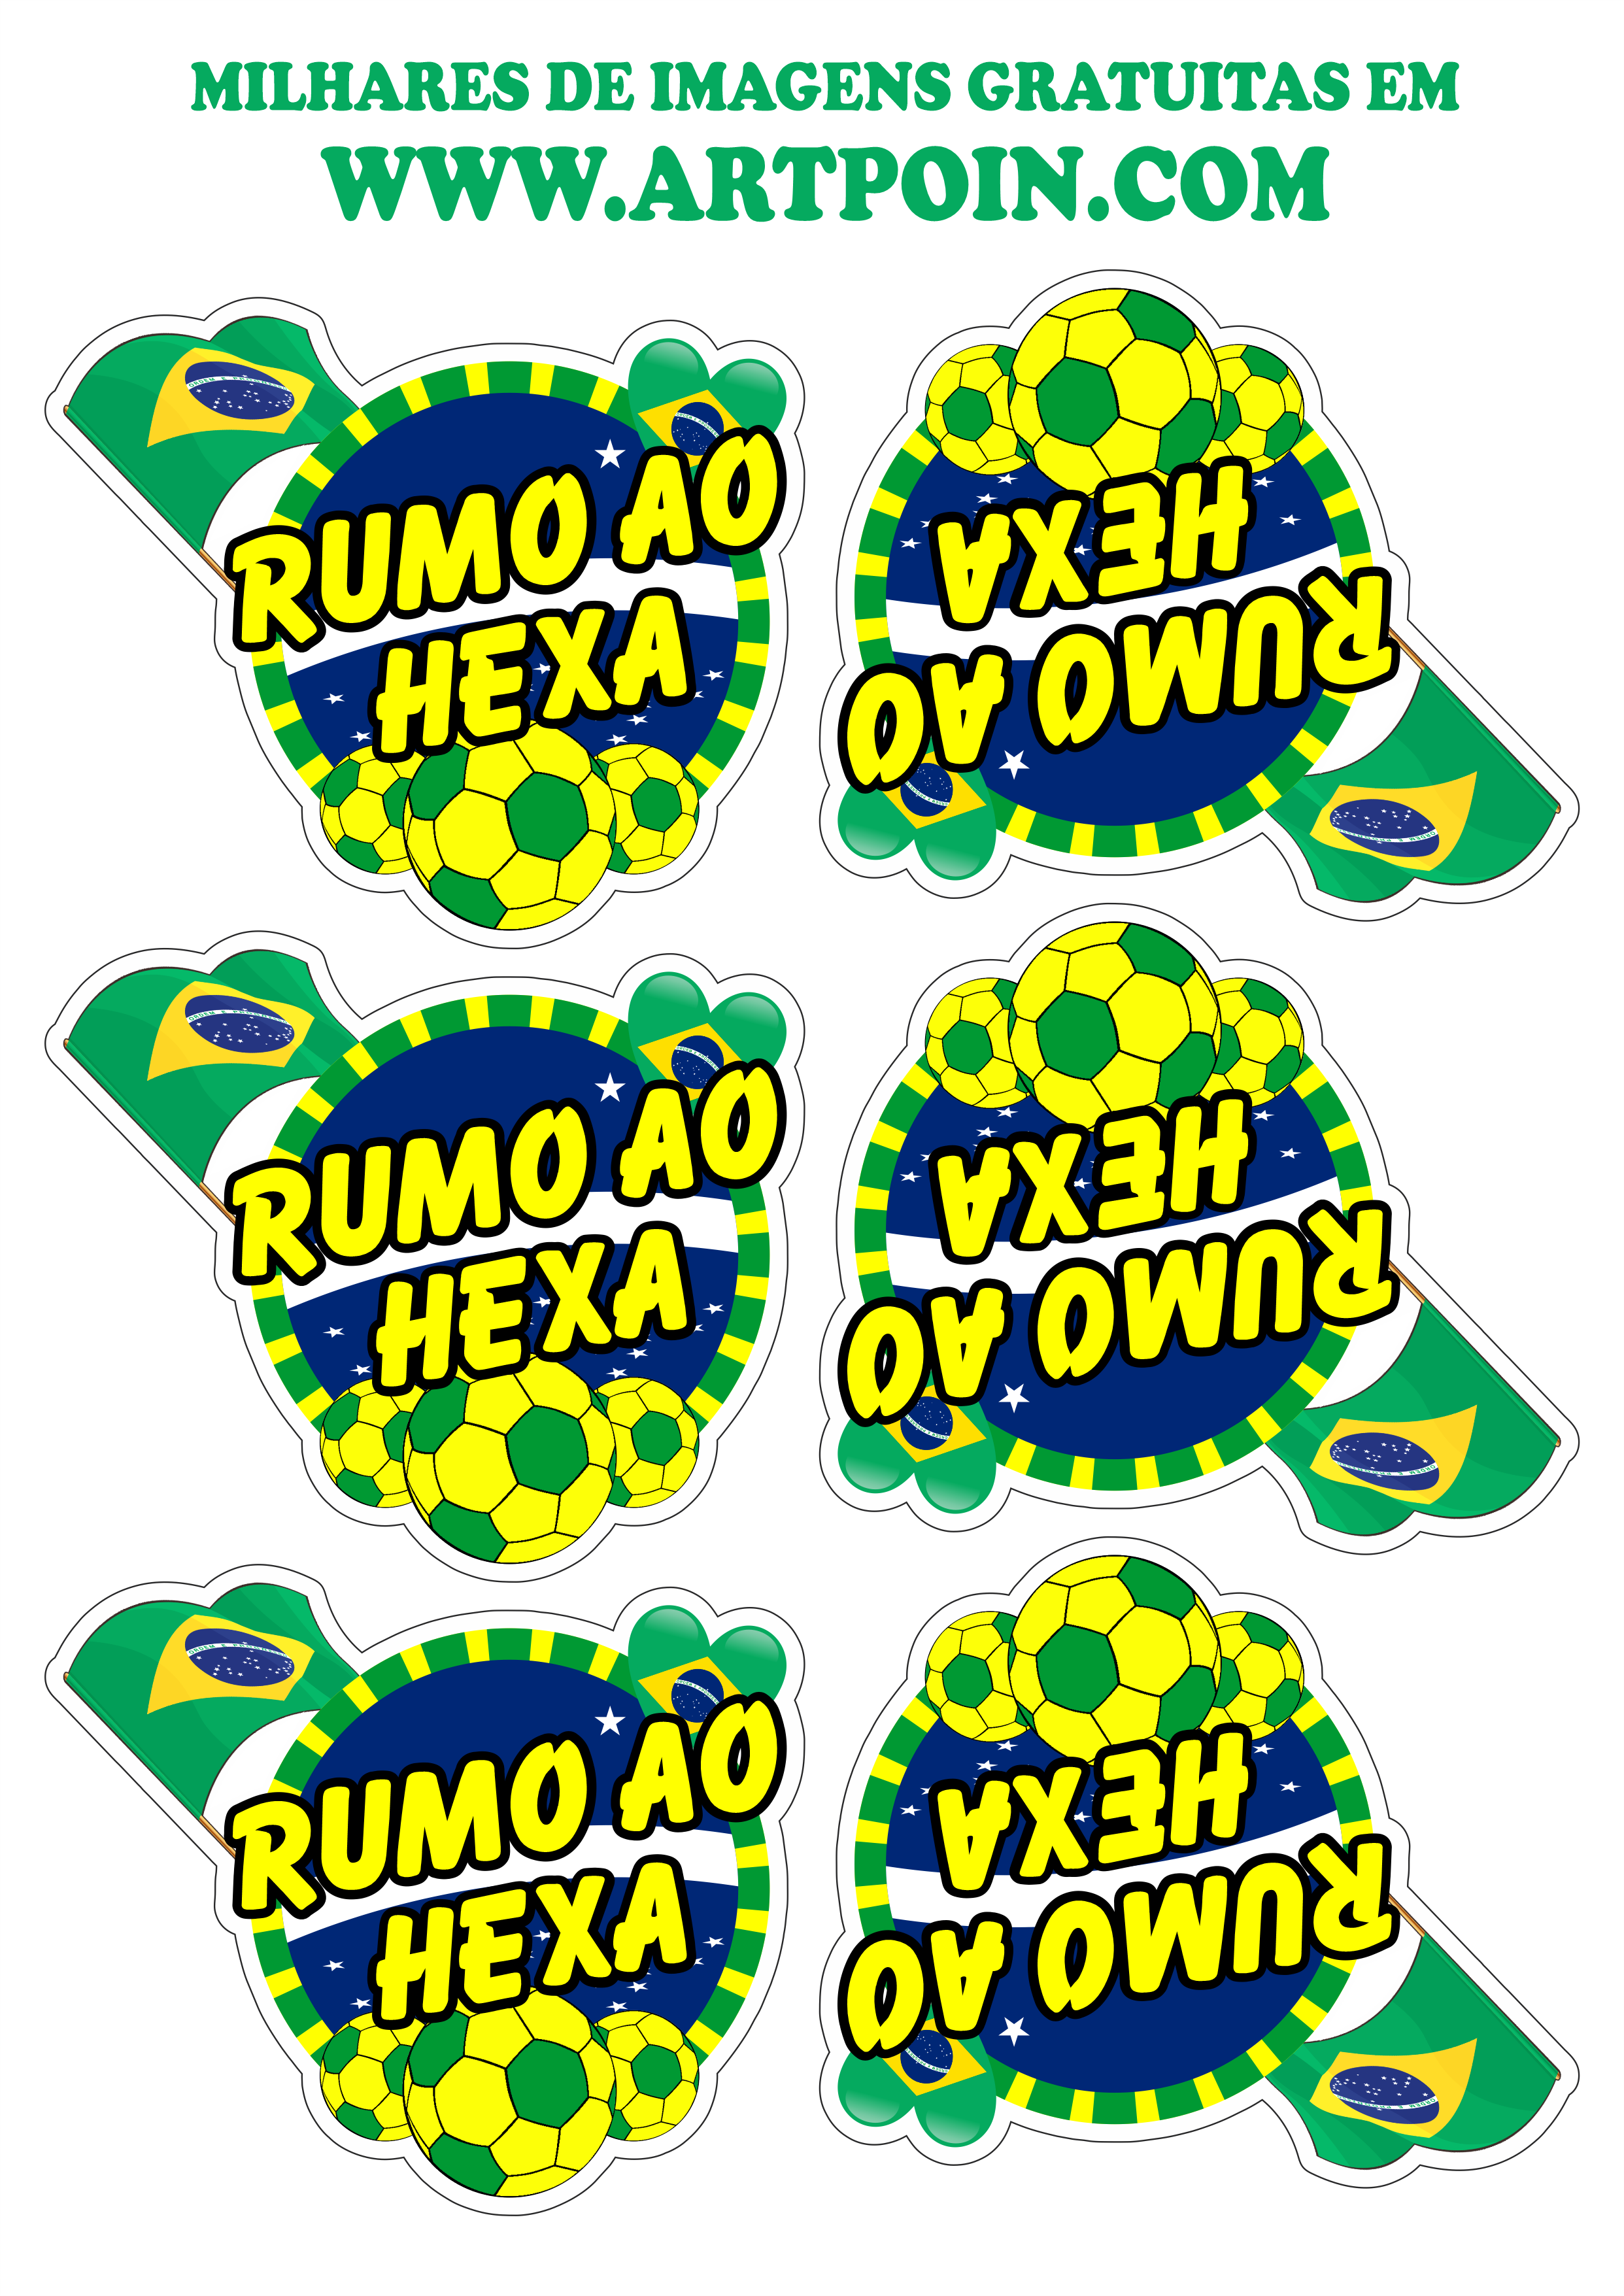 stickers-copa-do-mundo2